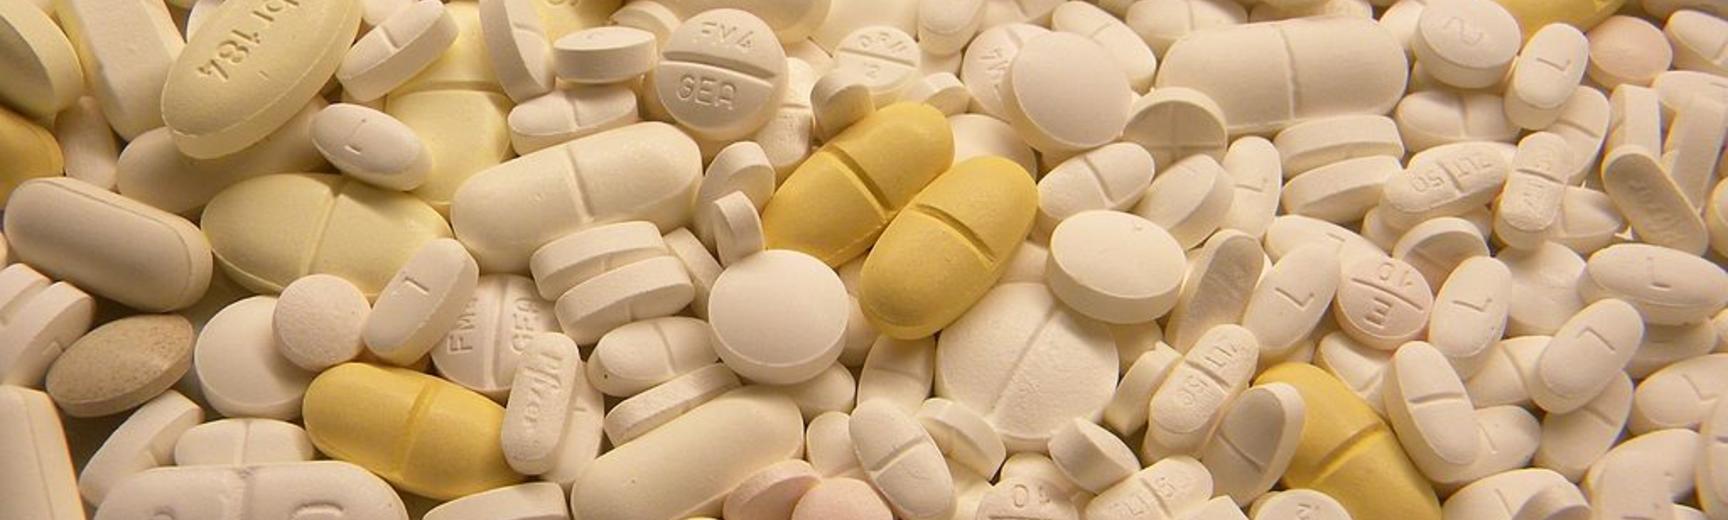 1024px tablets pills medicine medical waste